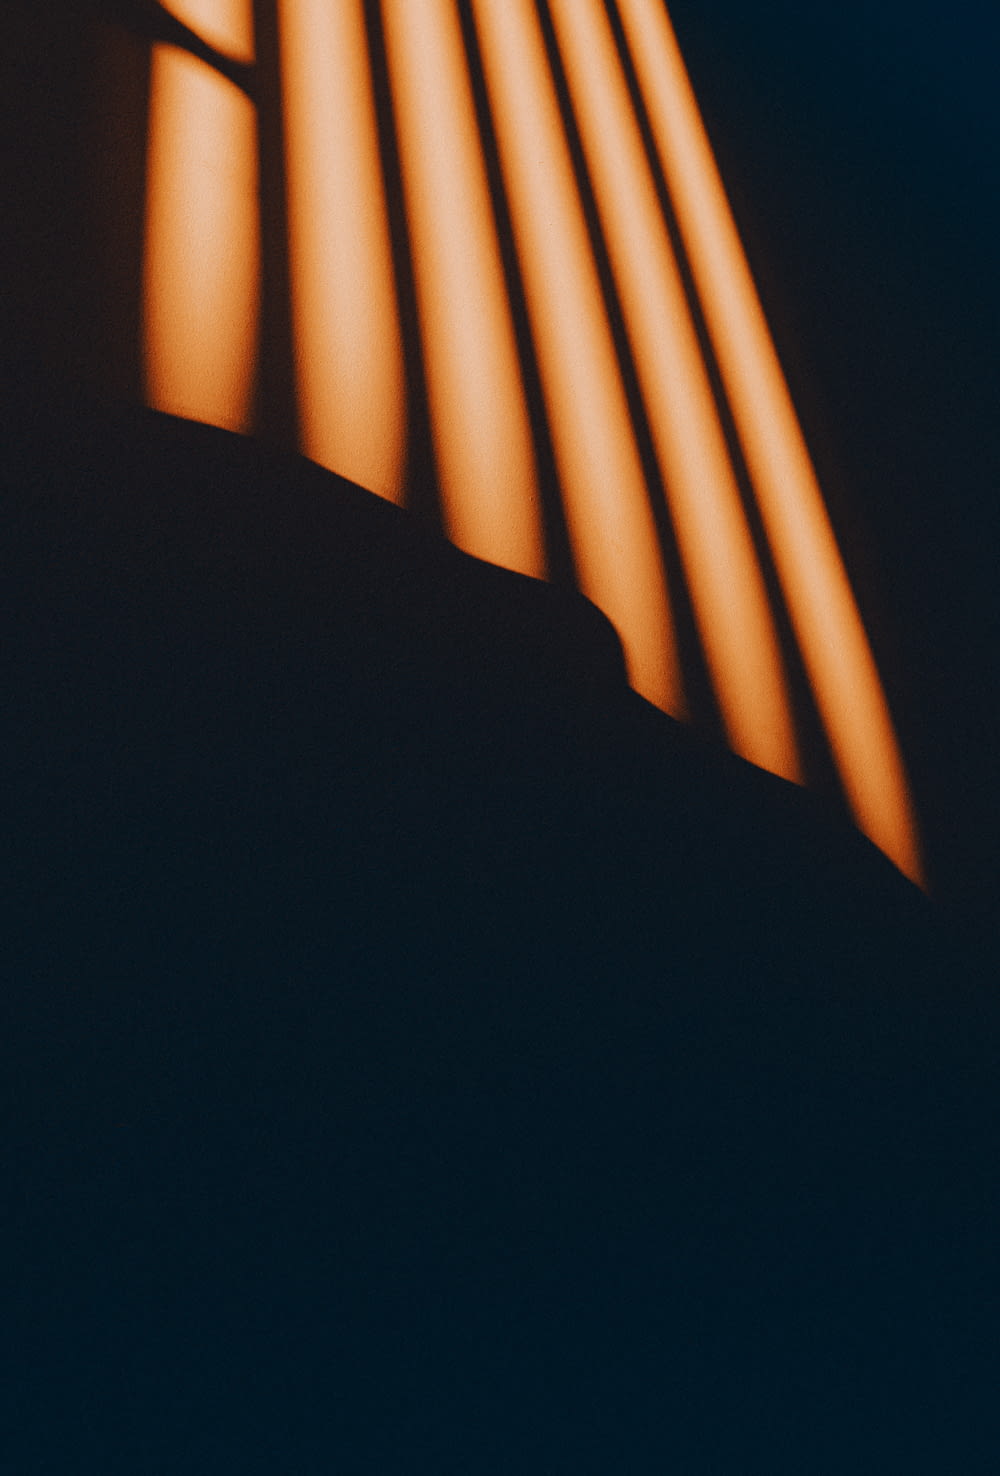 Una foto negra y naranja de una luz que entra por una ventana